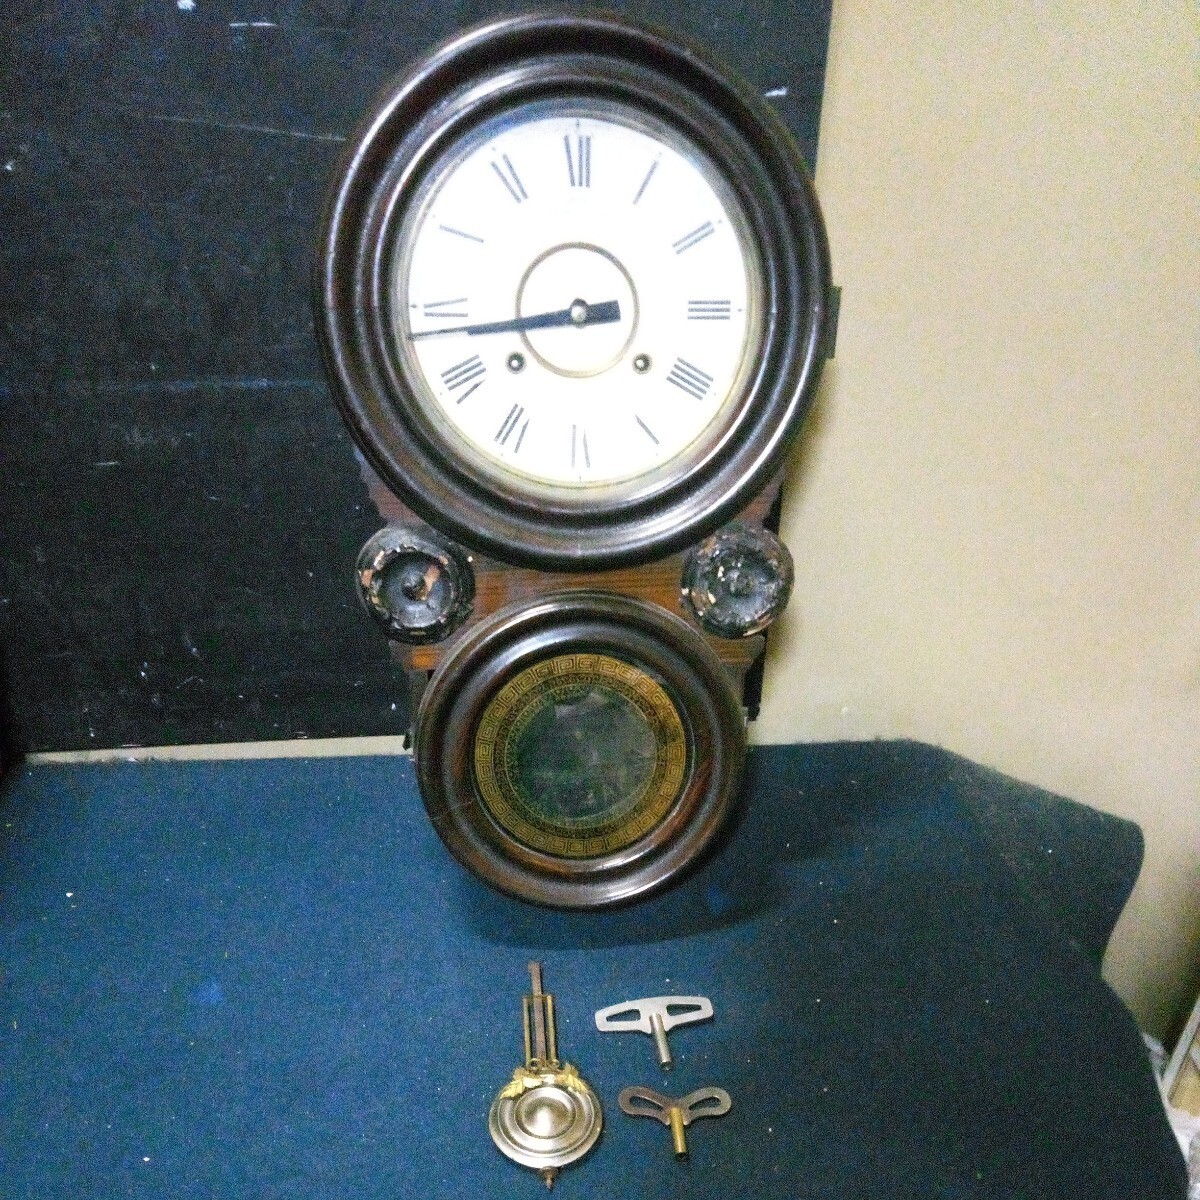  Osaka часы старый часы настенные часы настенные часы ... часы бонбон часы ... часы zen мой тип примерно 49×28cm толщина примерно 11cm античный Junk AD-27